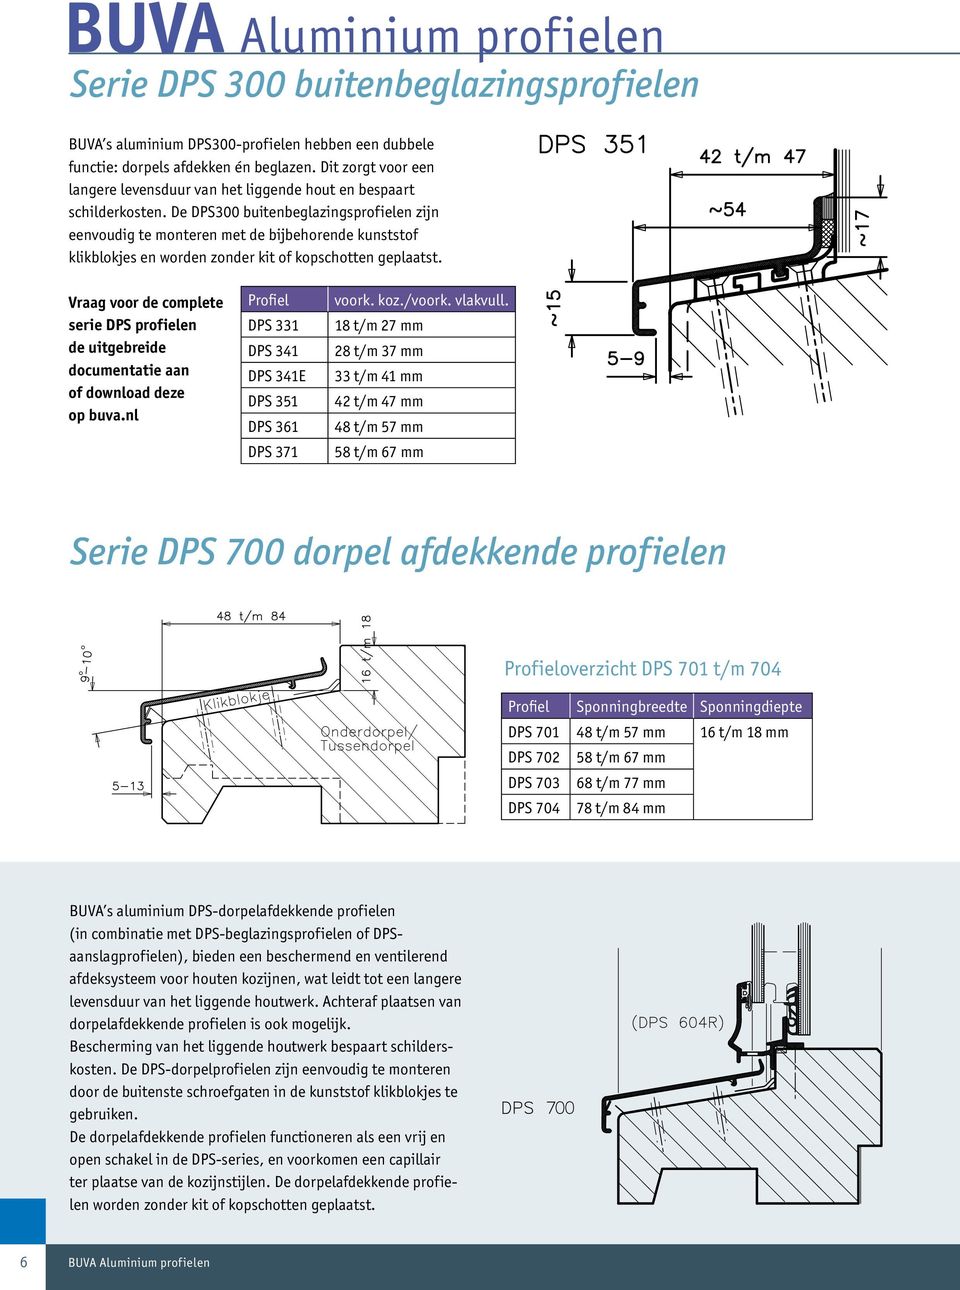 De DPS300 buitenbeglazingsprofielen zijn eenvoudig te monteren met de bijbehorende kunststof klikblokjes en worden zonder kit of kopschotten geplaatst.